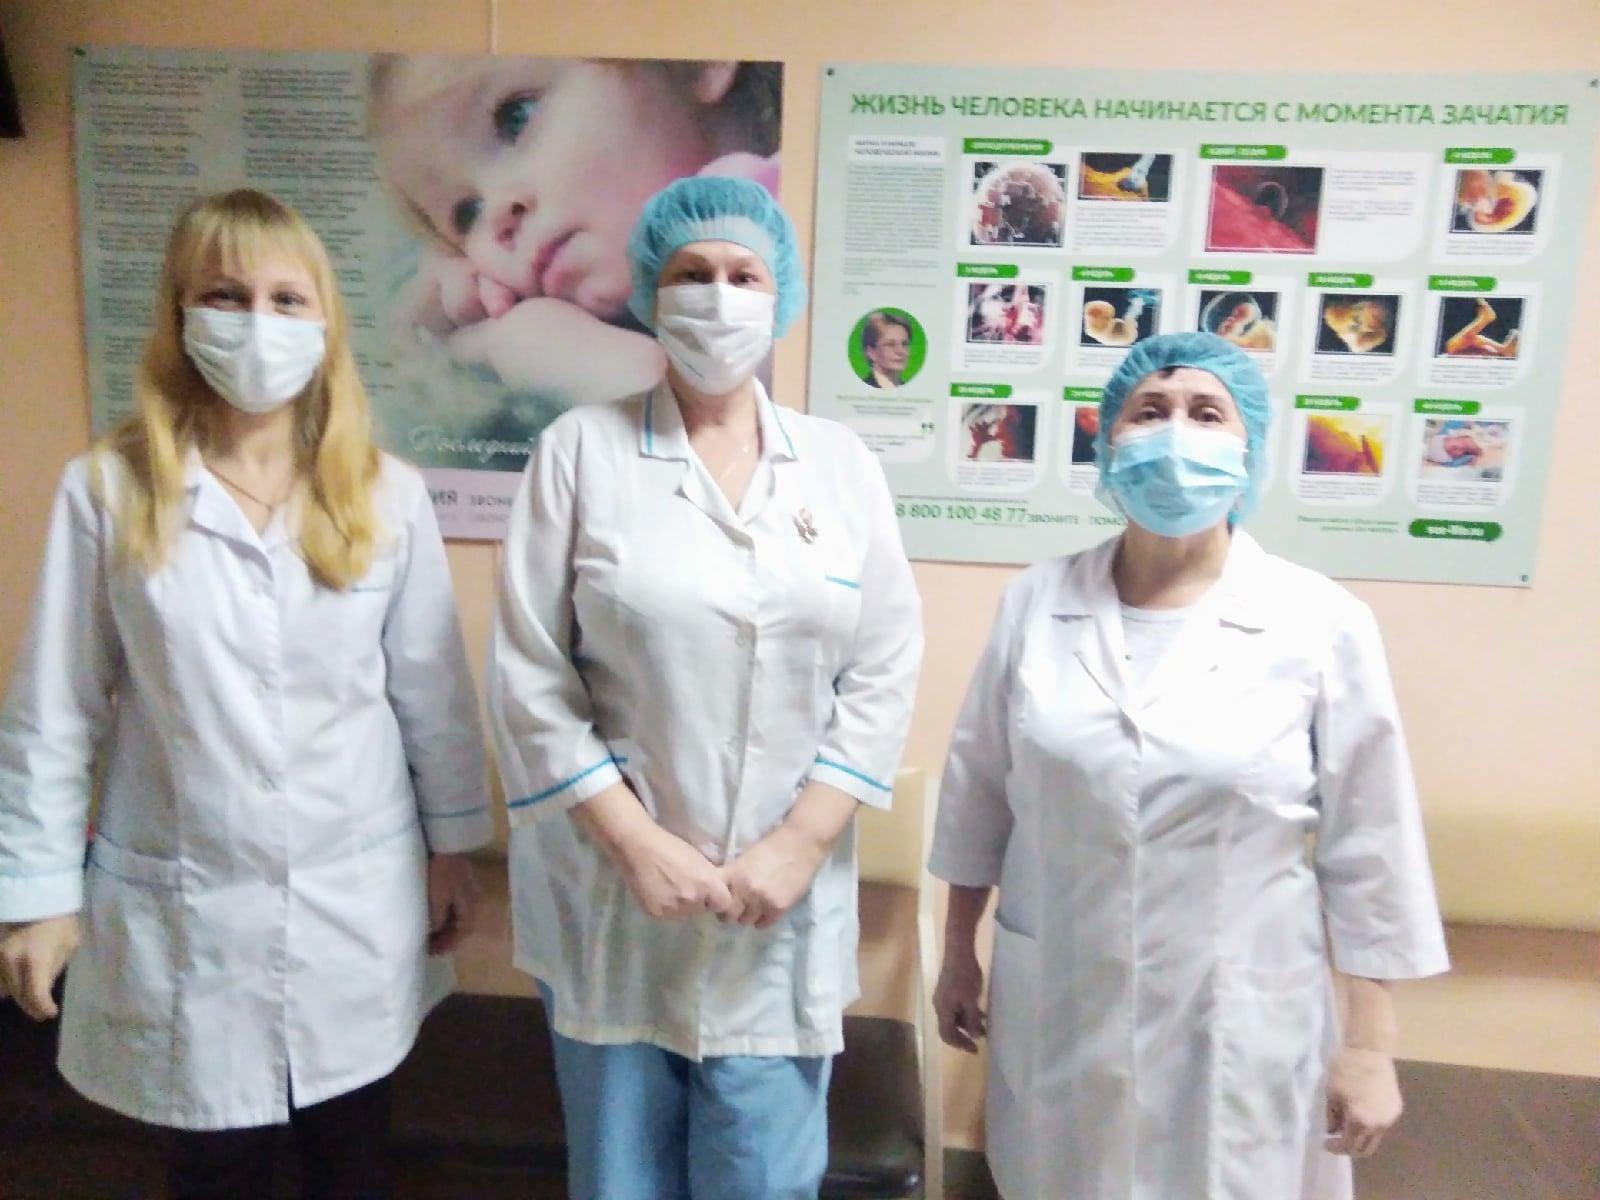 Центр «Моя семья» разместил в женской консультации КОГБУЗ «Вятскополянская центральная районная больница» 6 стендов в защиту жизни до рождения